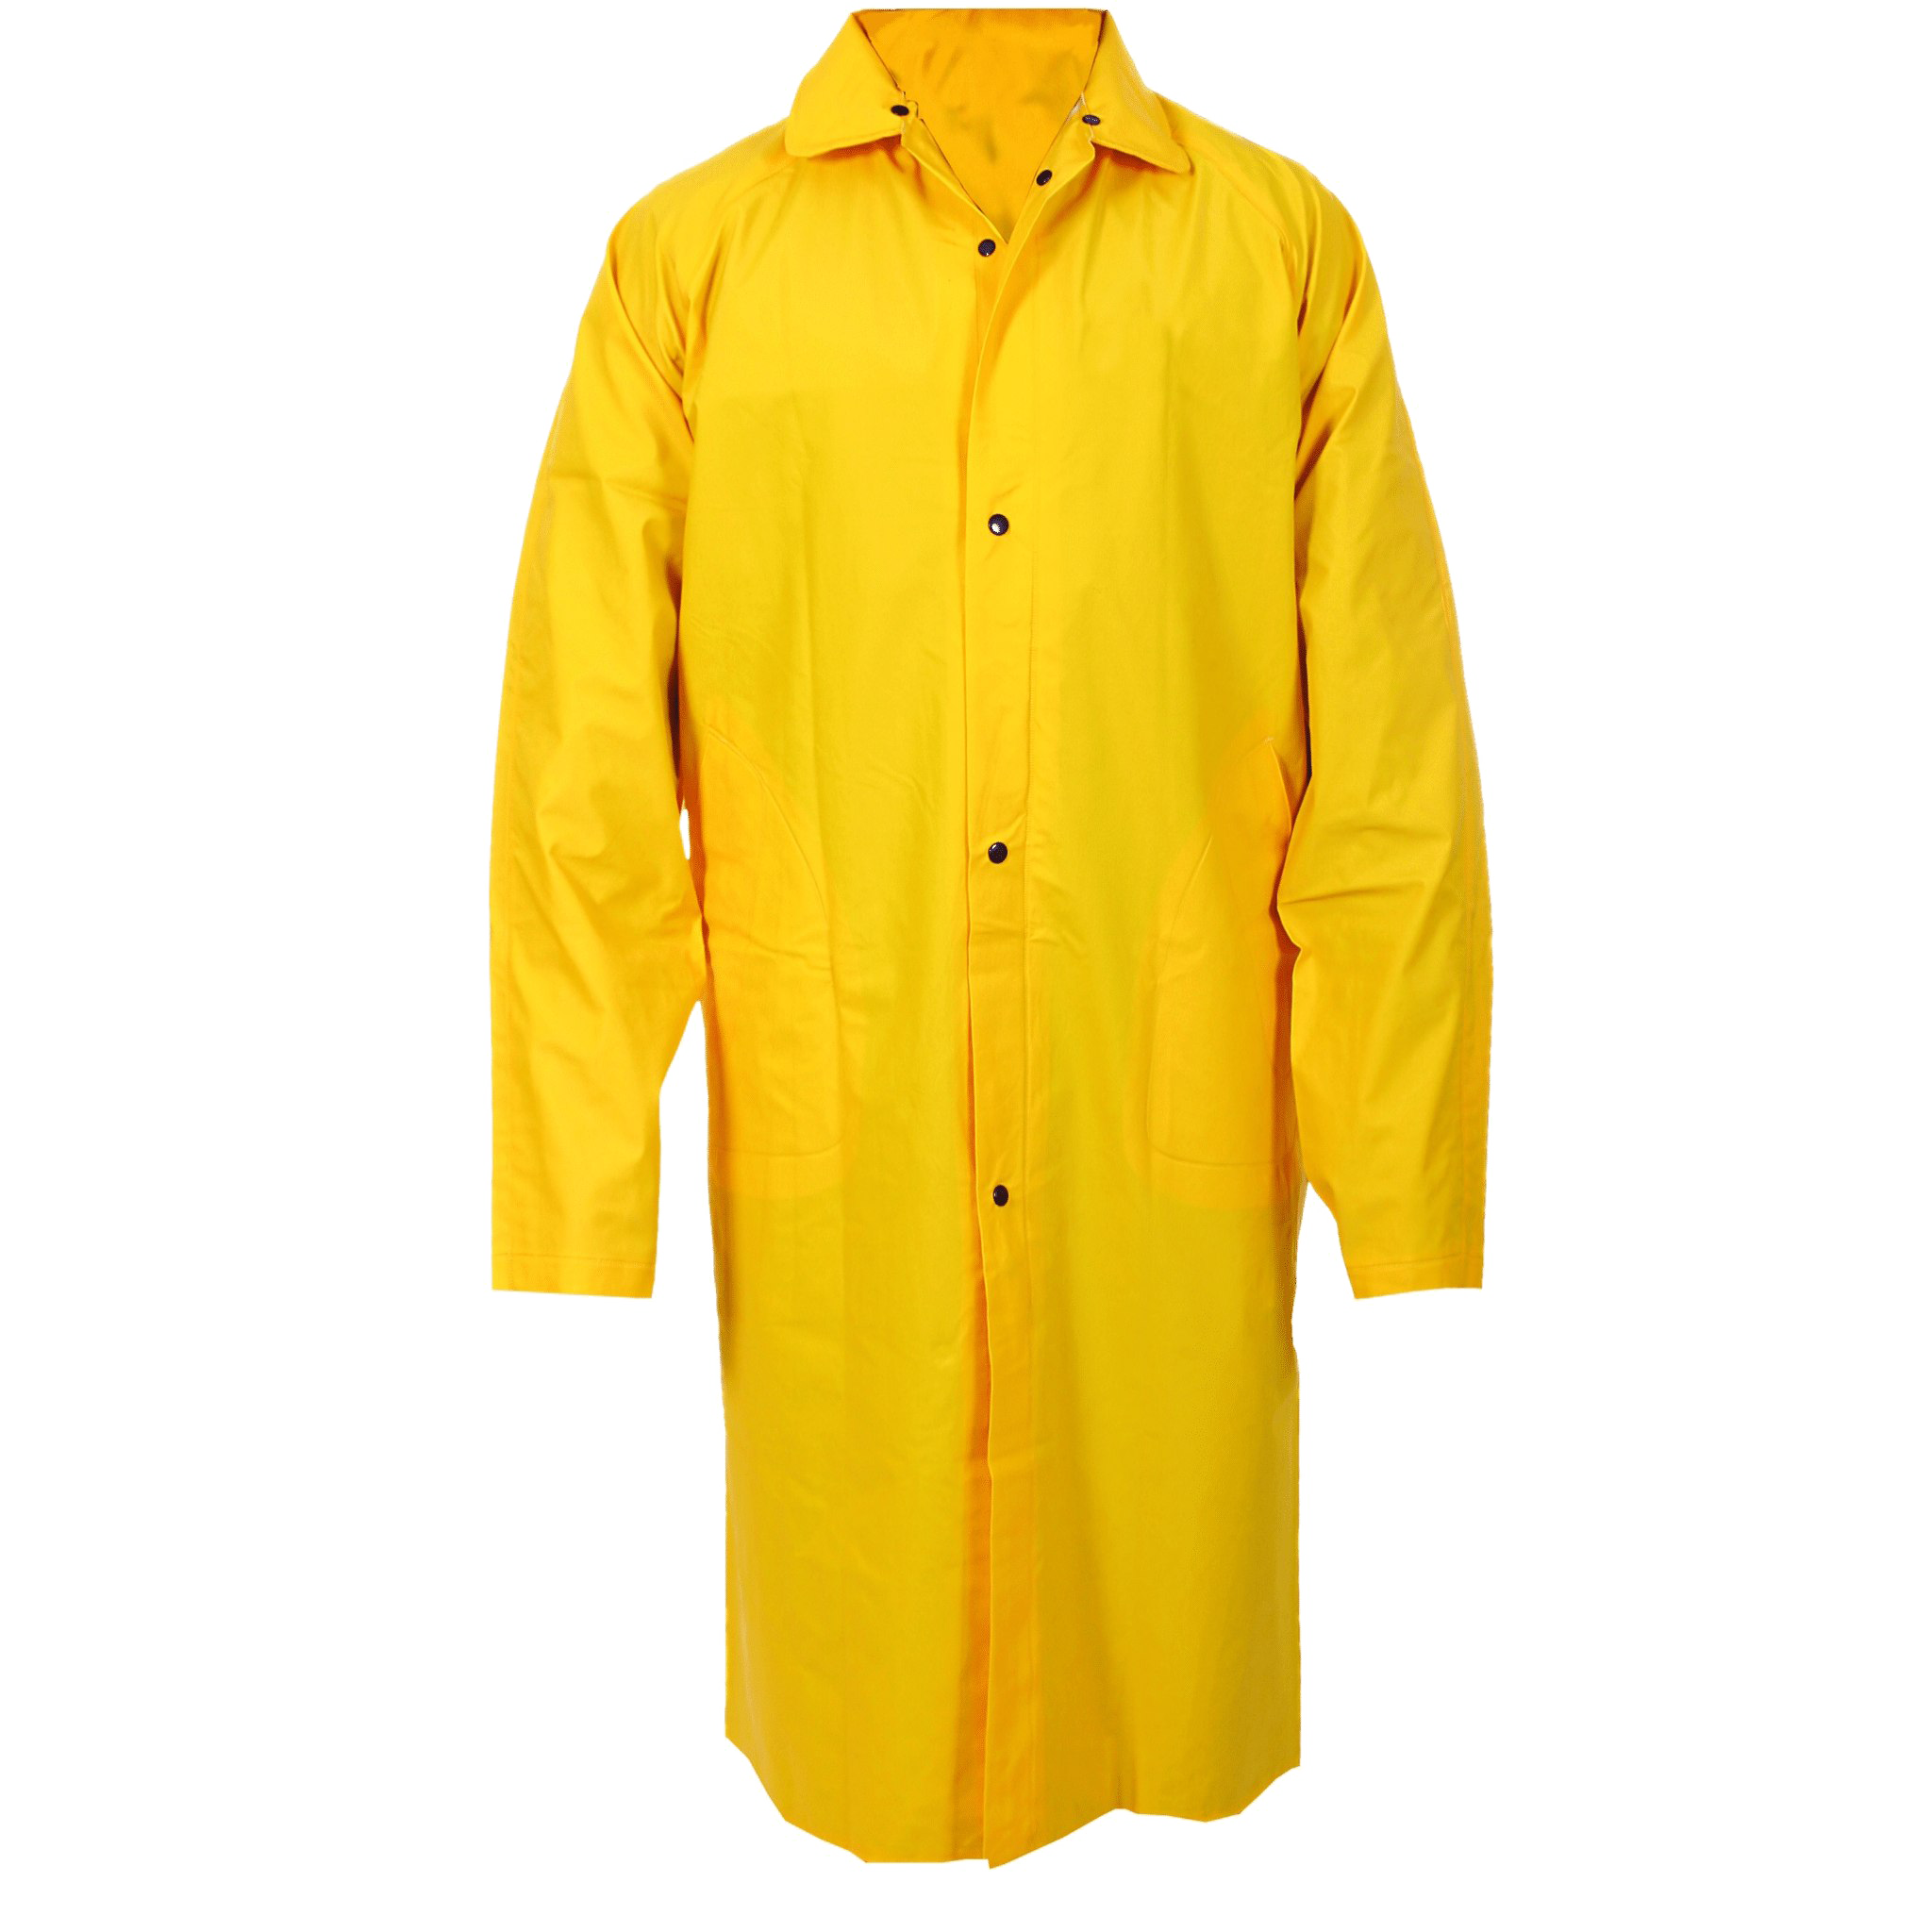 Raincoat PNG Free File Download